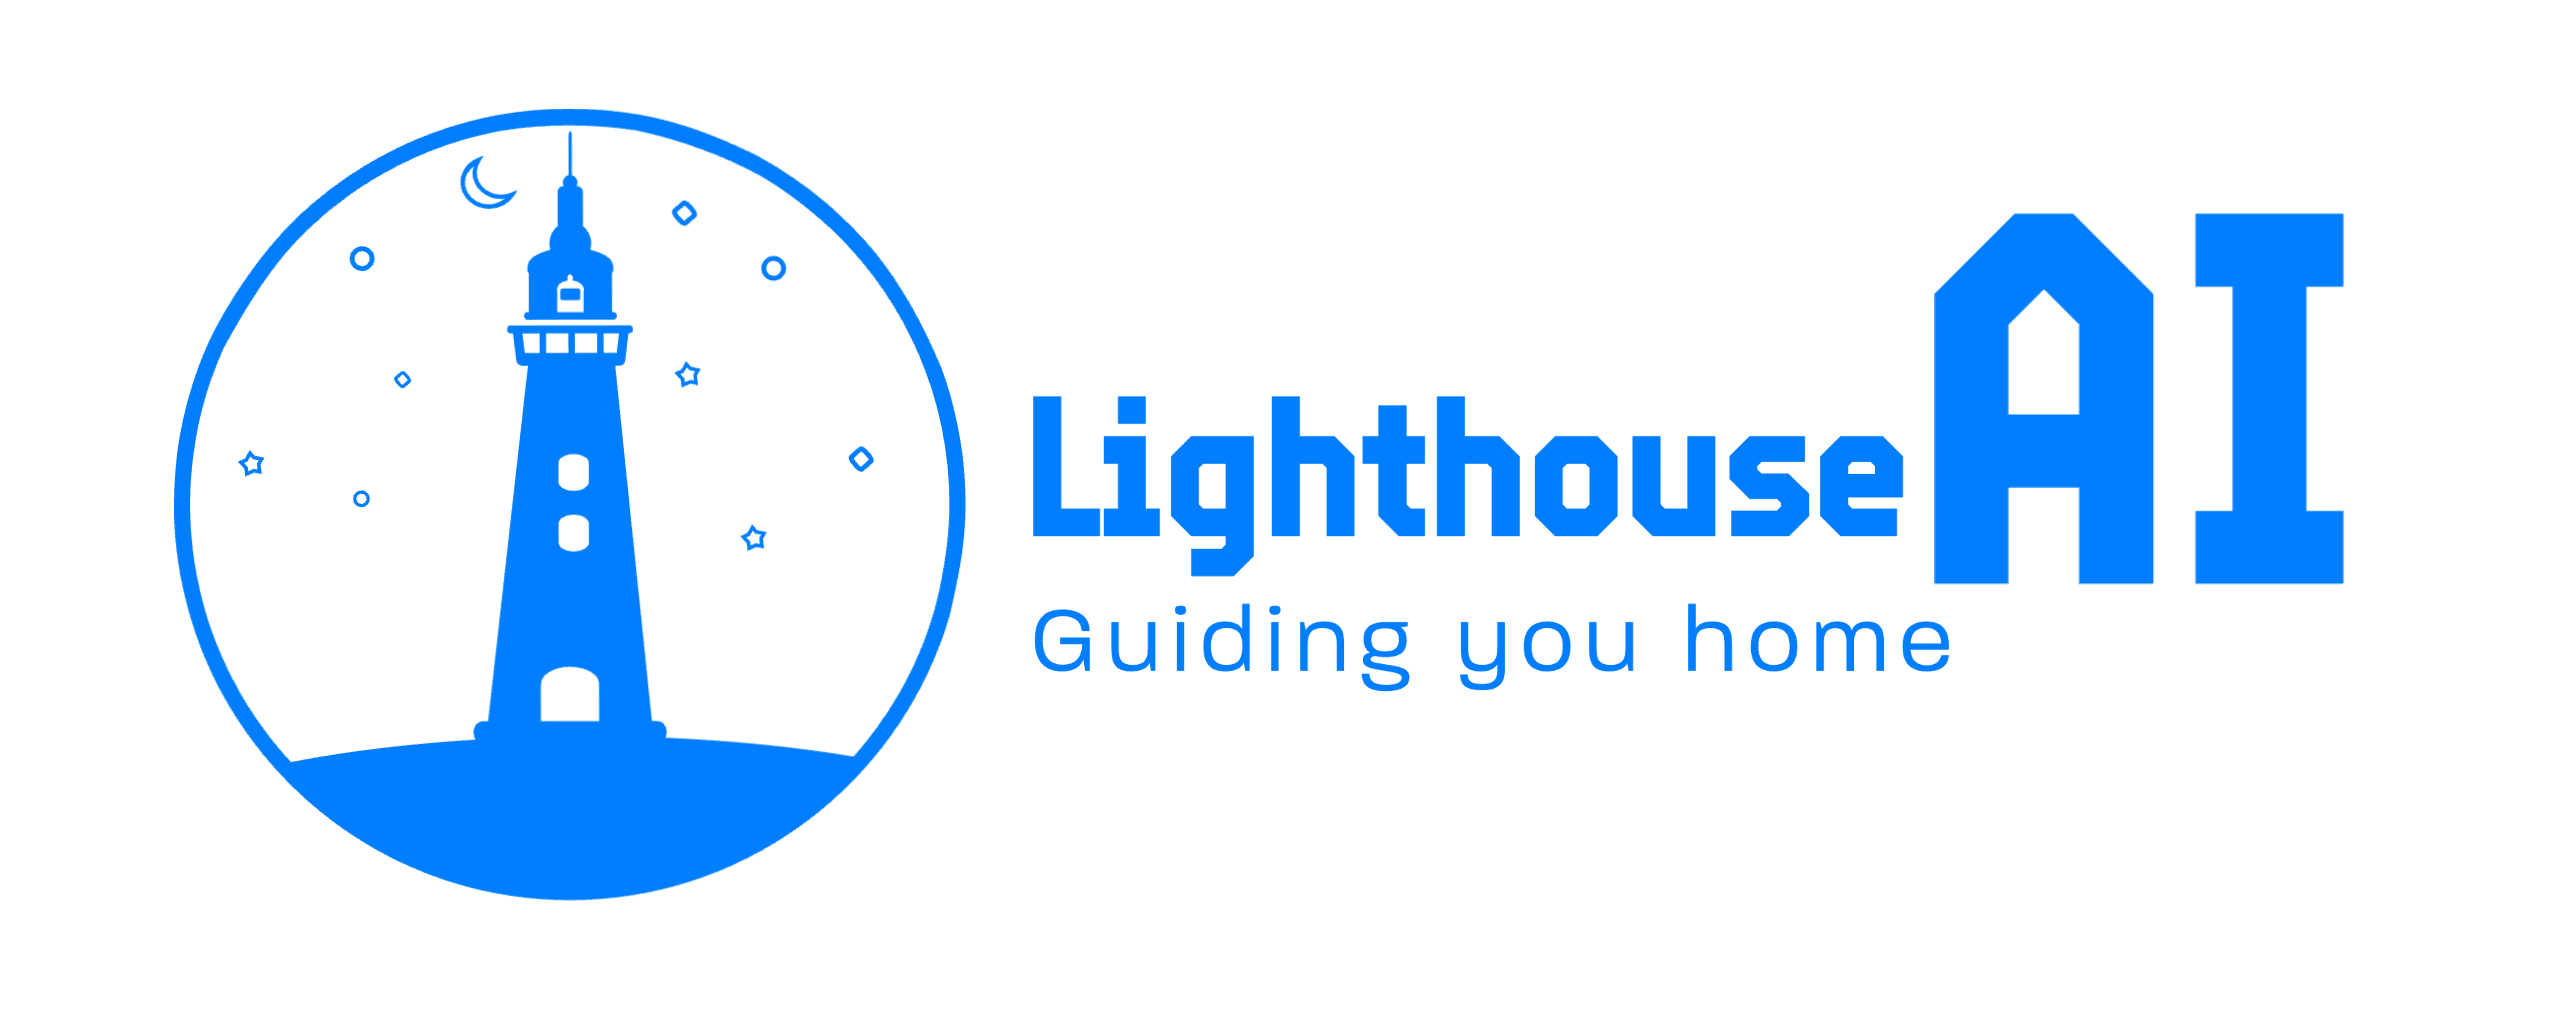 Lighthouse-AI